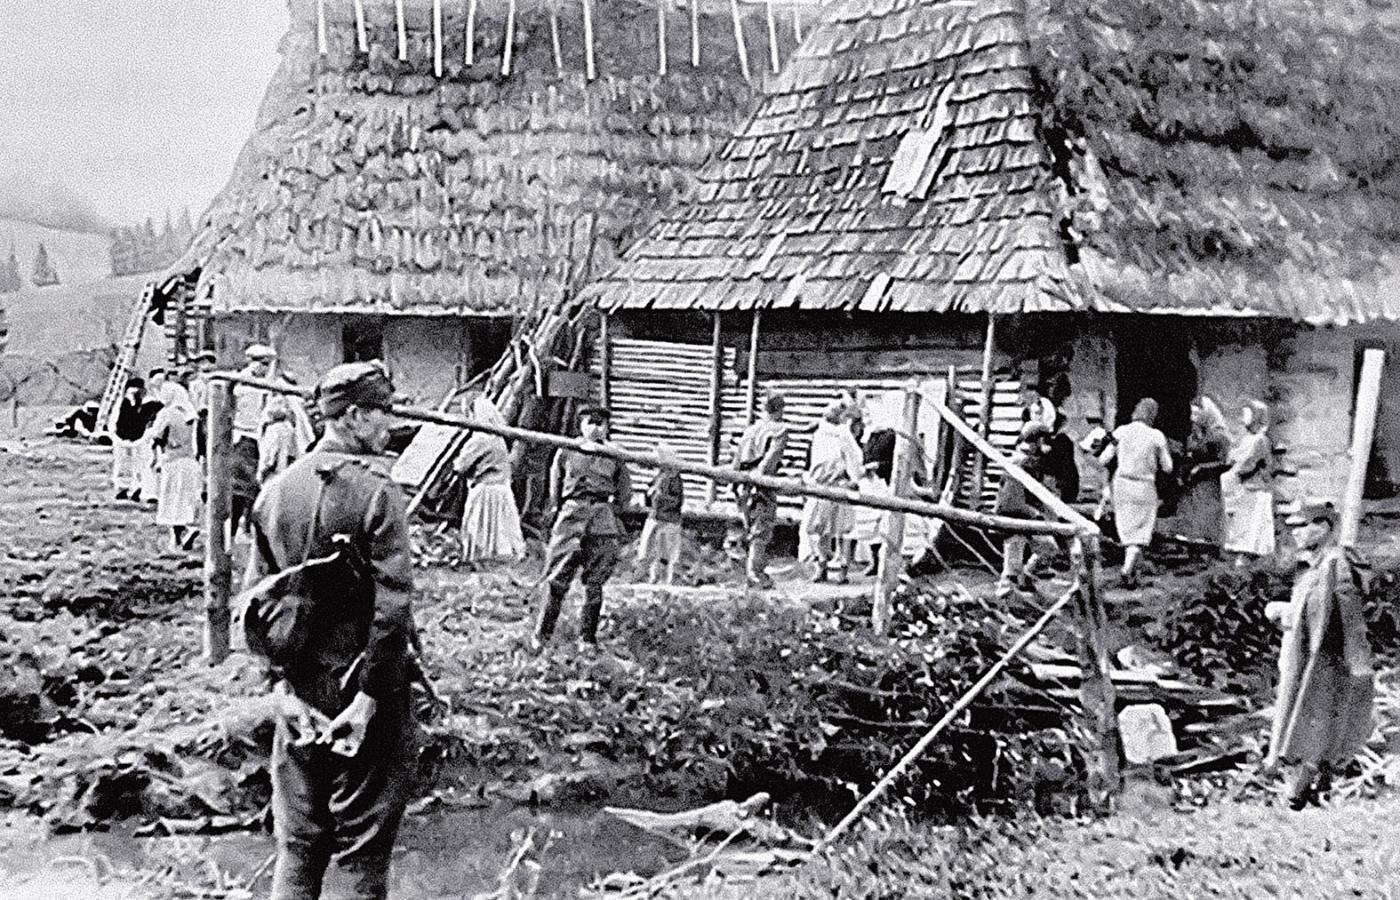 Żołnierze nadzorujący wysiedlanie wsi w Bieszczadach w 1947 r. O przymusowym przesiedlaniu Ukraińców w akcji „Wisła” autor podręcznika milczy.